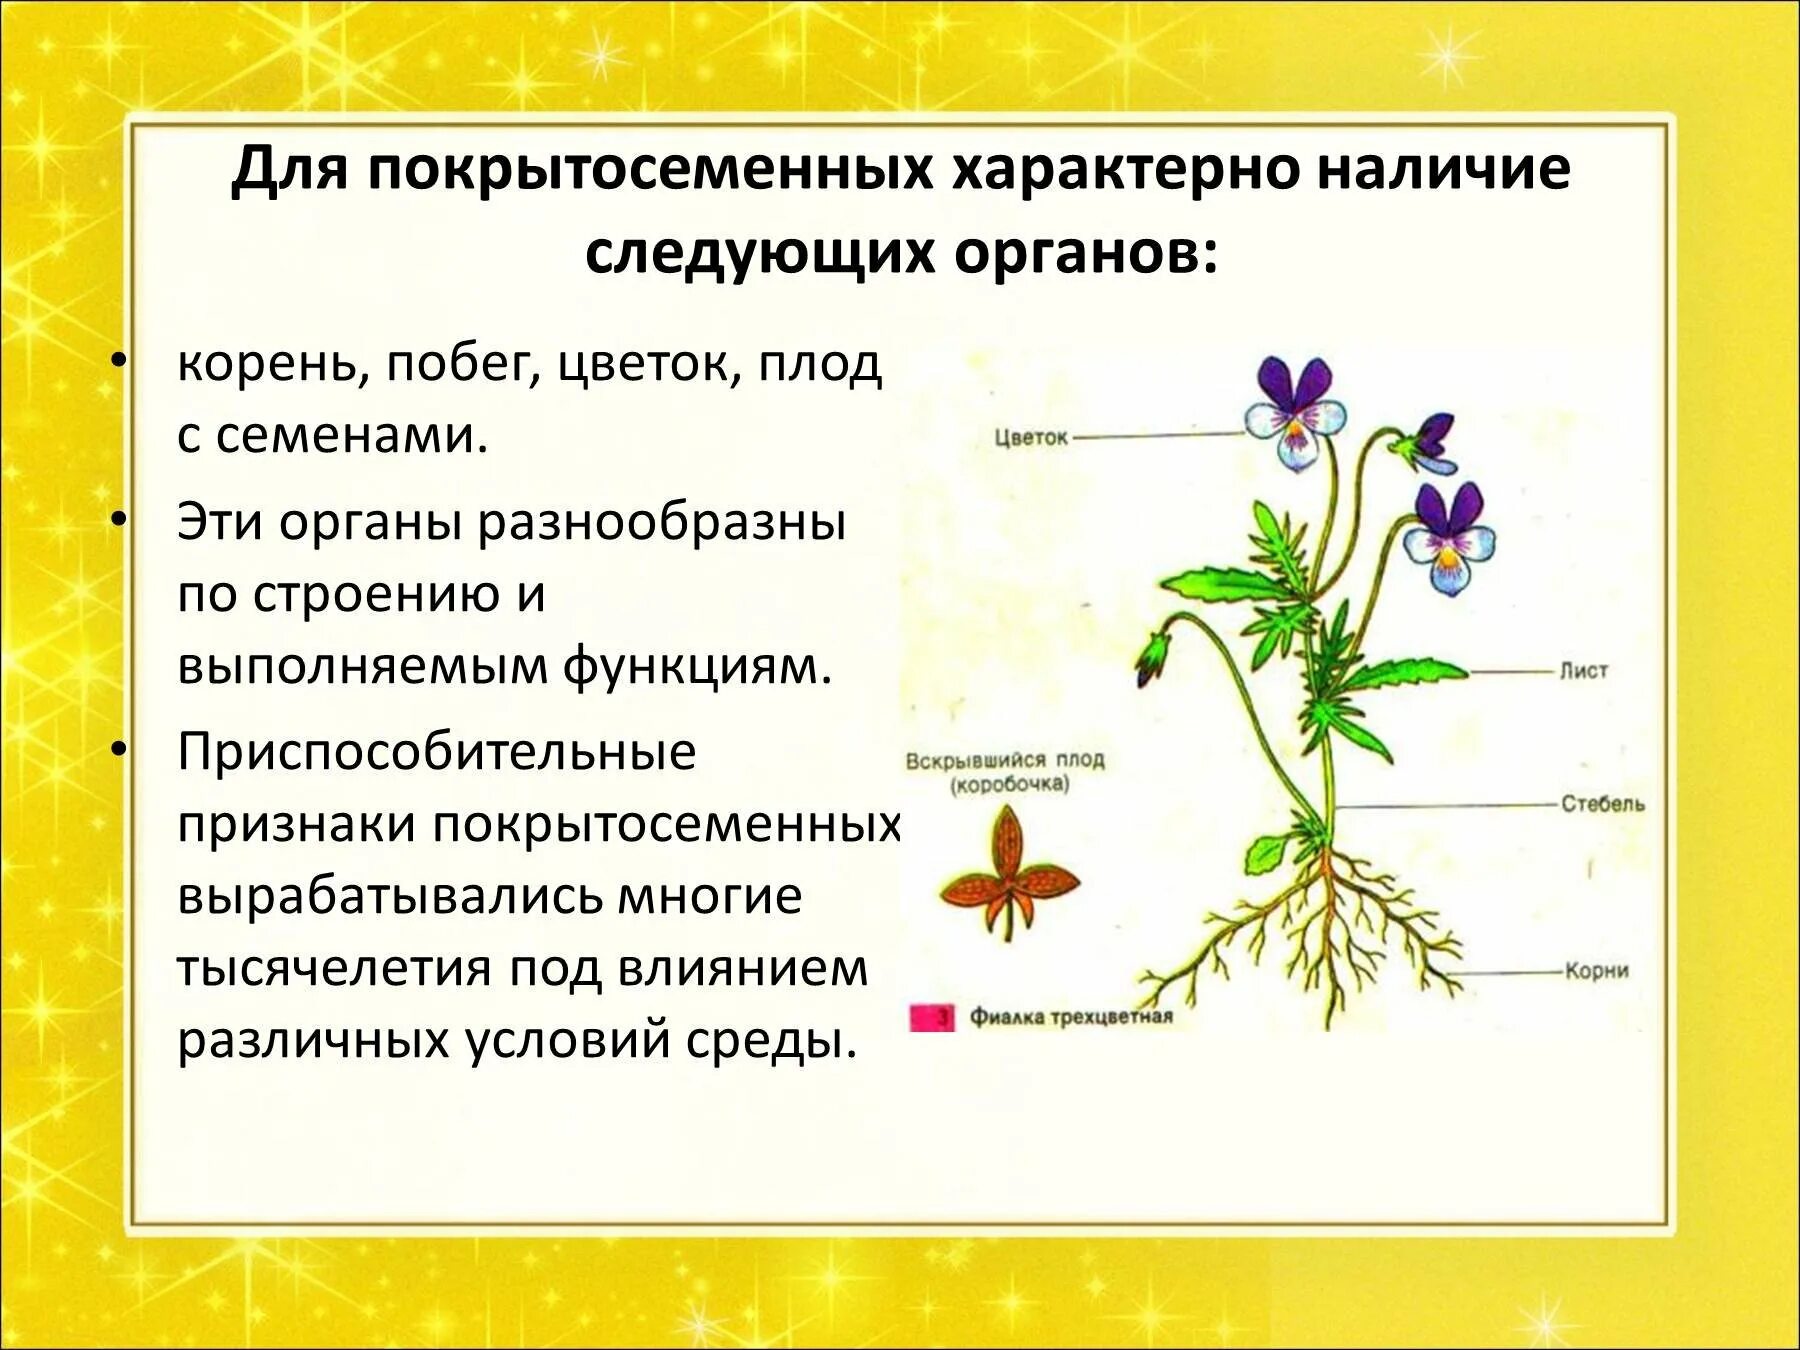 Покрытосеменные цветковые растения строение. Строение цветковых покрытосеменных растений. Корневая система покрытосеменных растений. Особенности строения покрытосеменных растений.